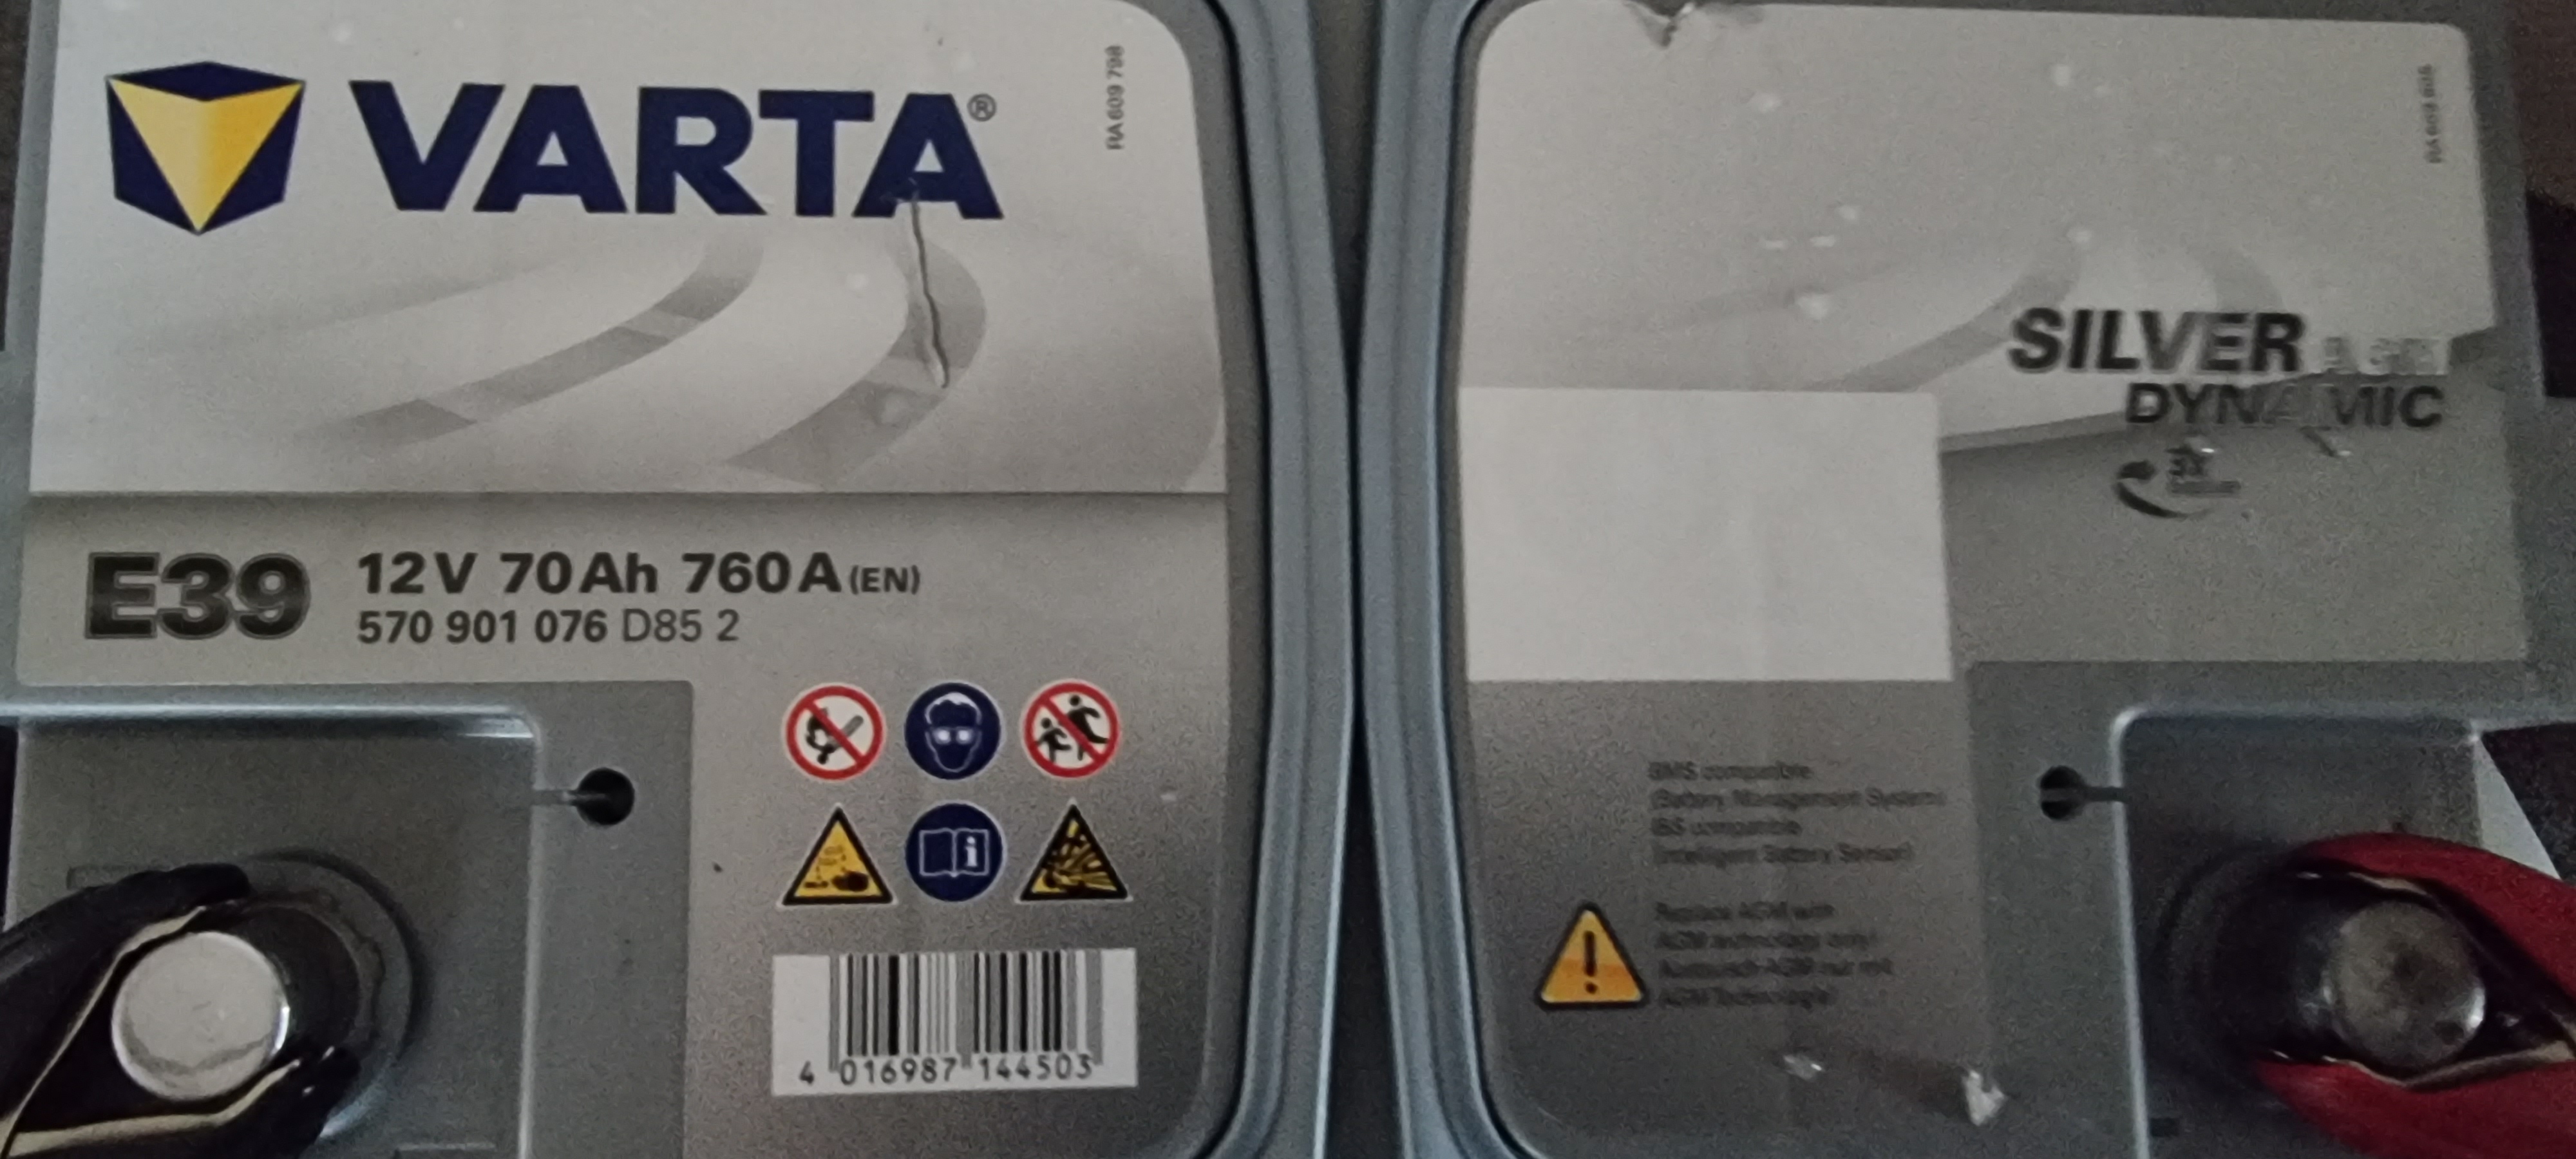 Varta AGM battery serial number - Skoda Octavia Mk III (2013